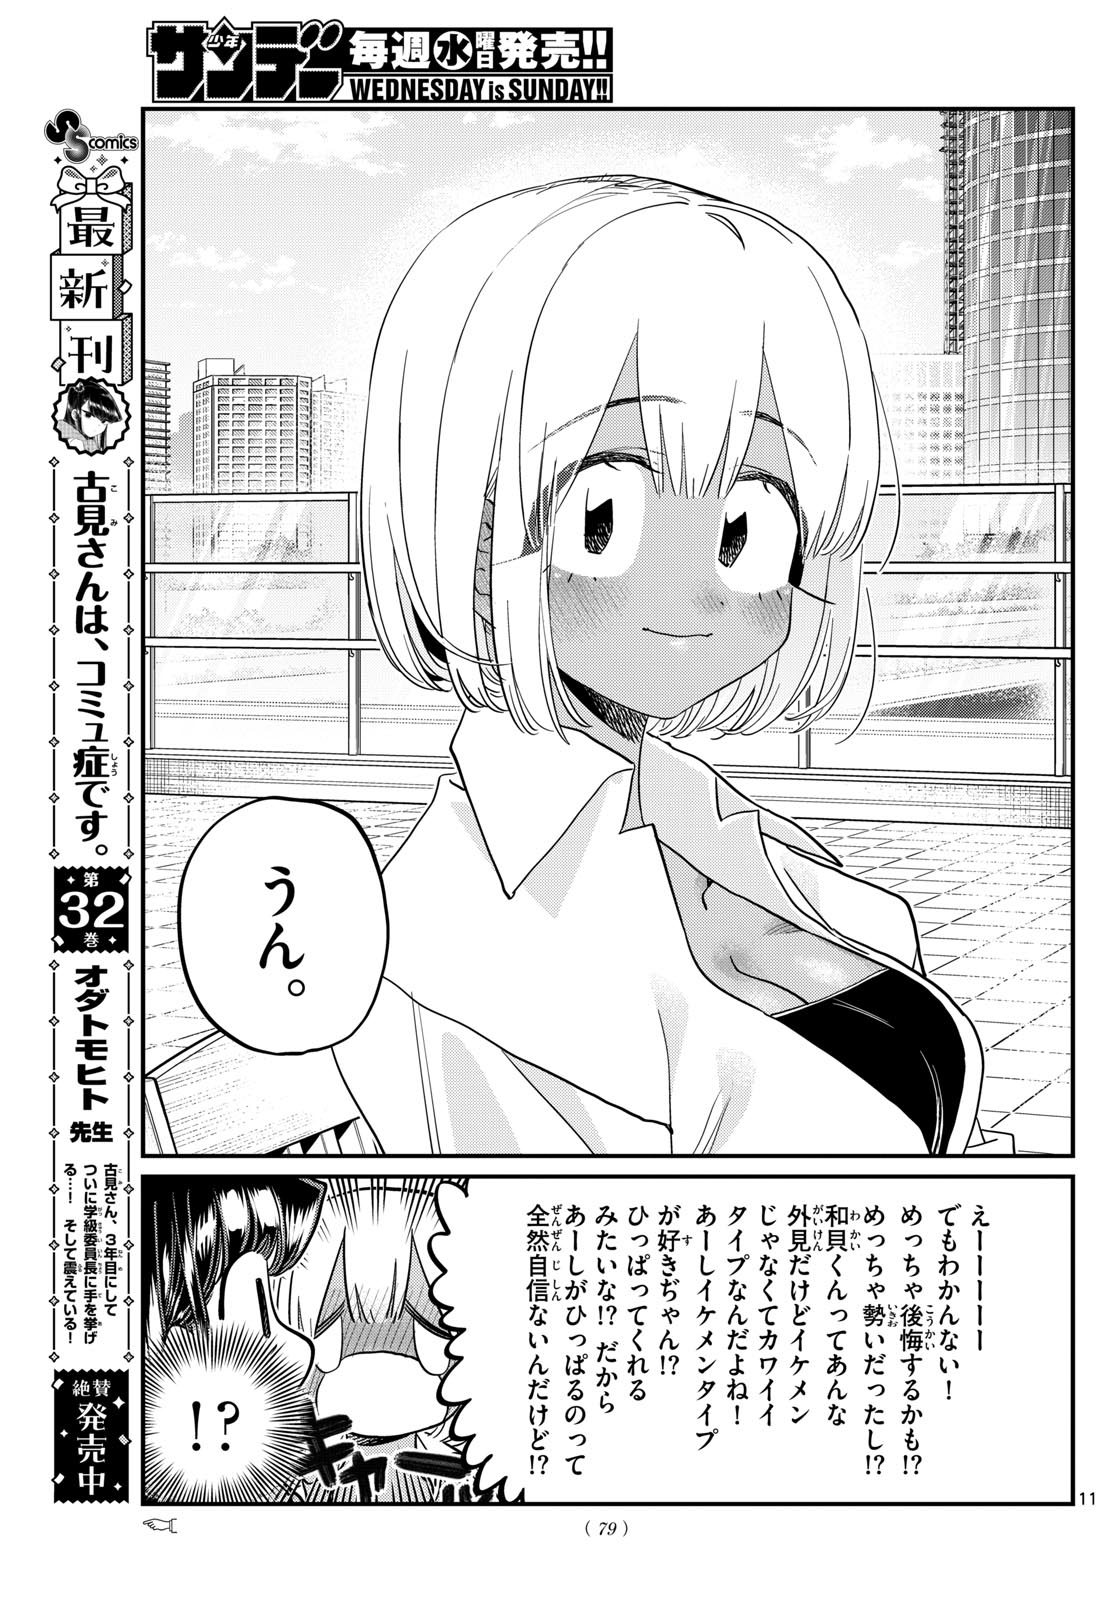 Komi-san wa Komyushou Desu - Chapter 444 - Page 11